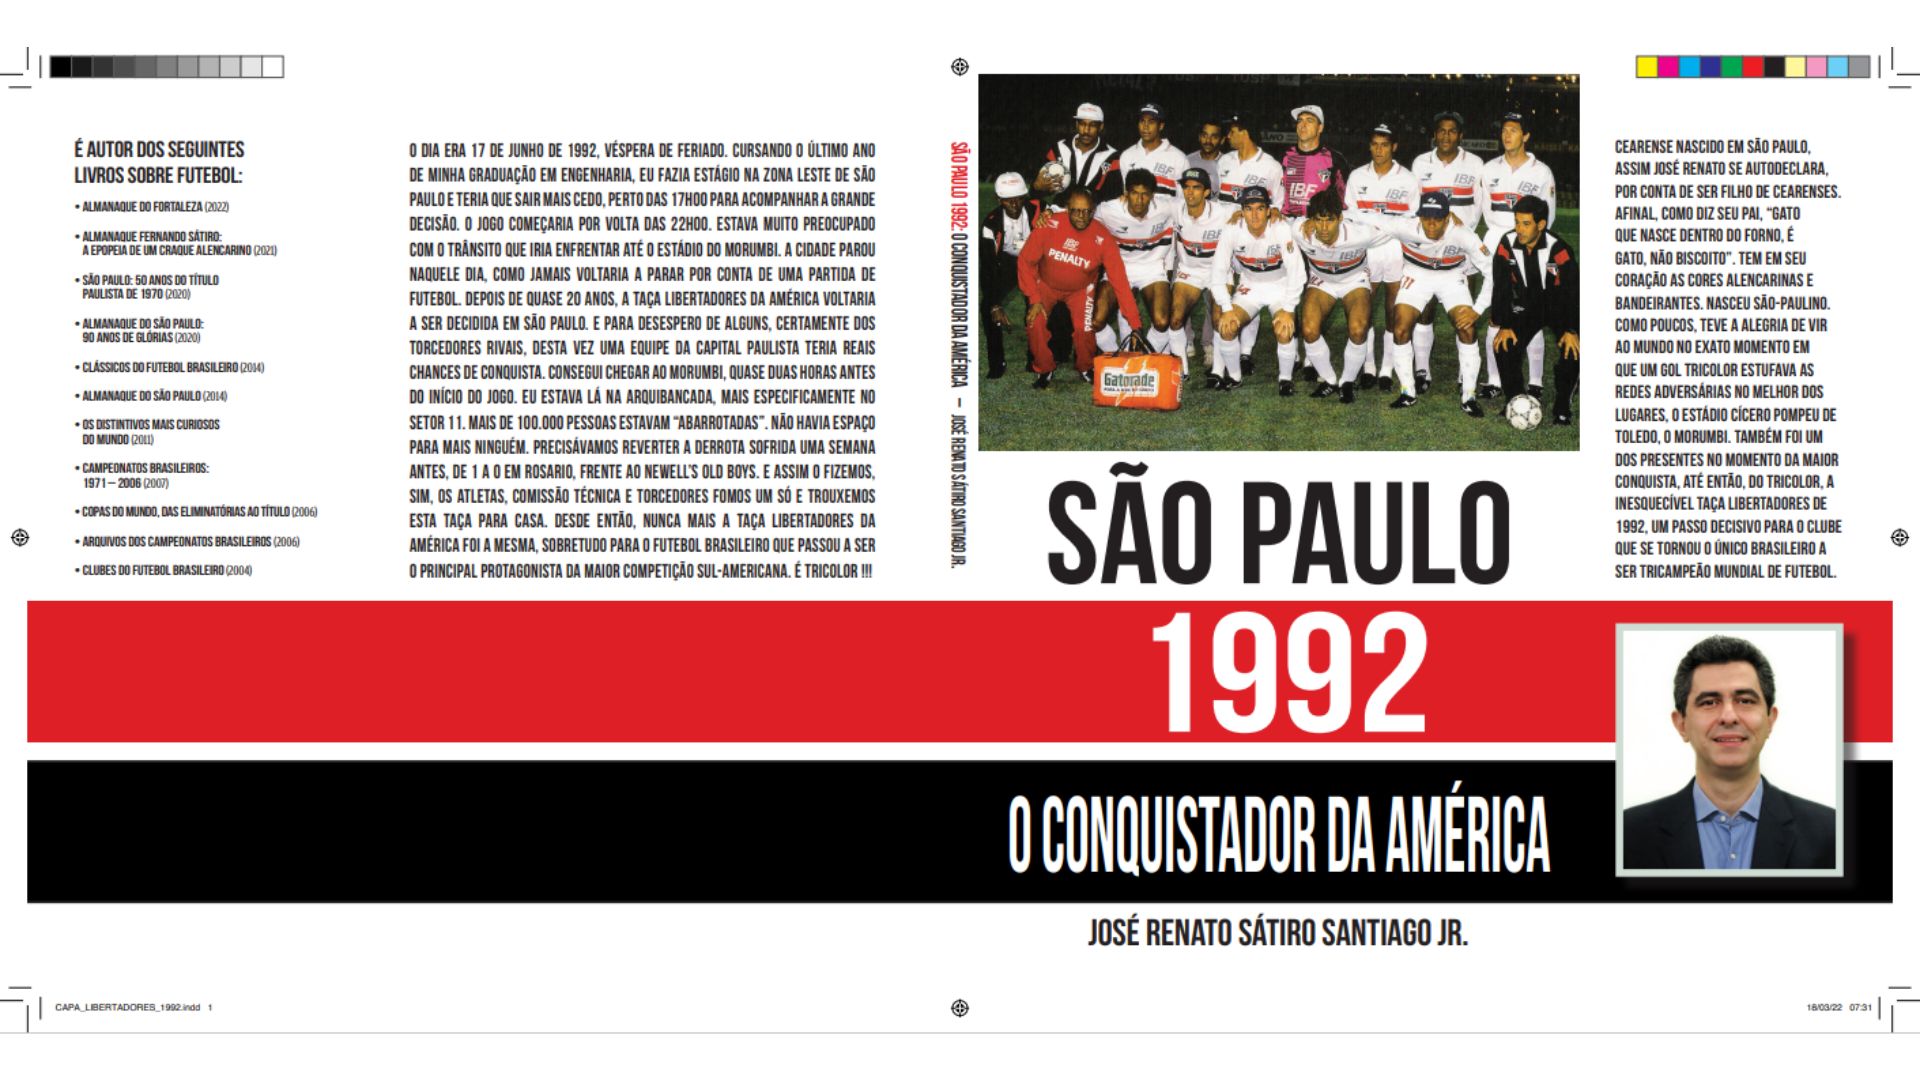 São Paulo 1992: O conquistador da América